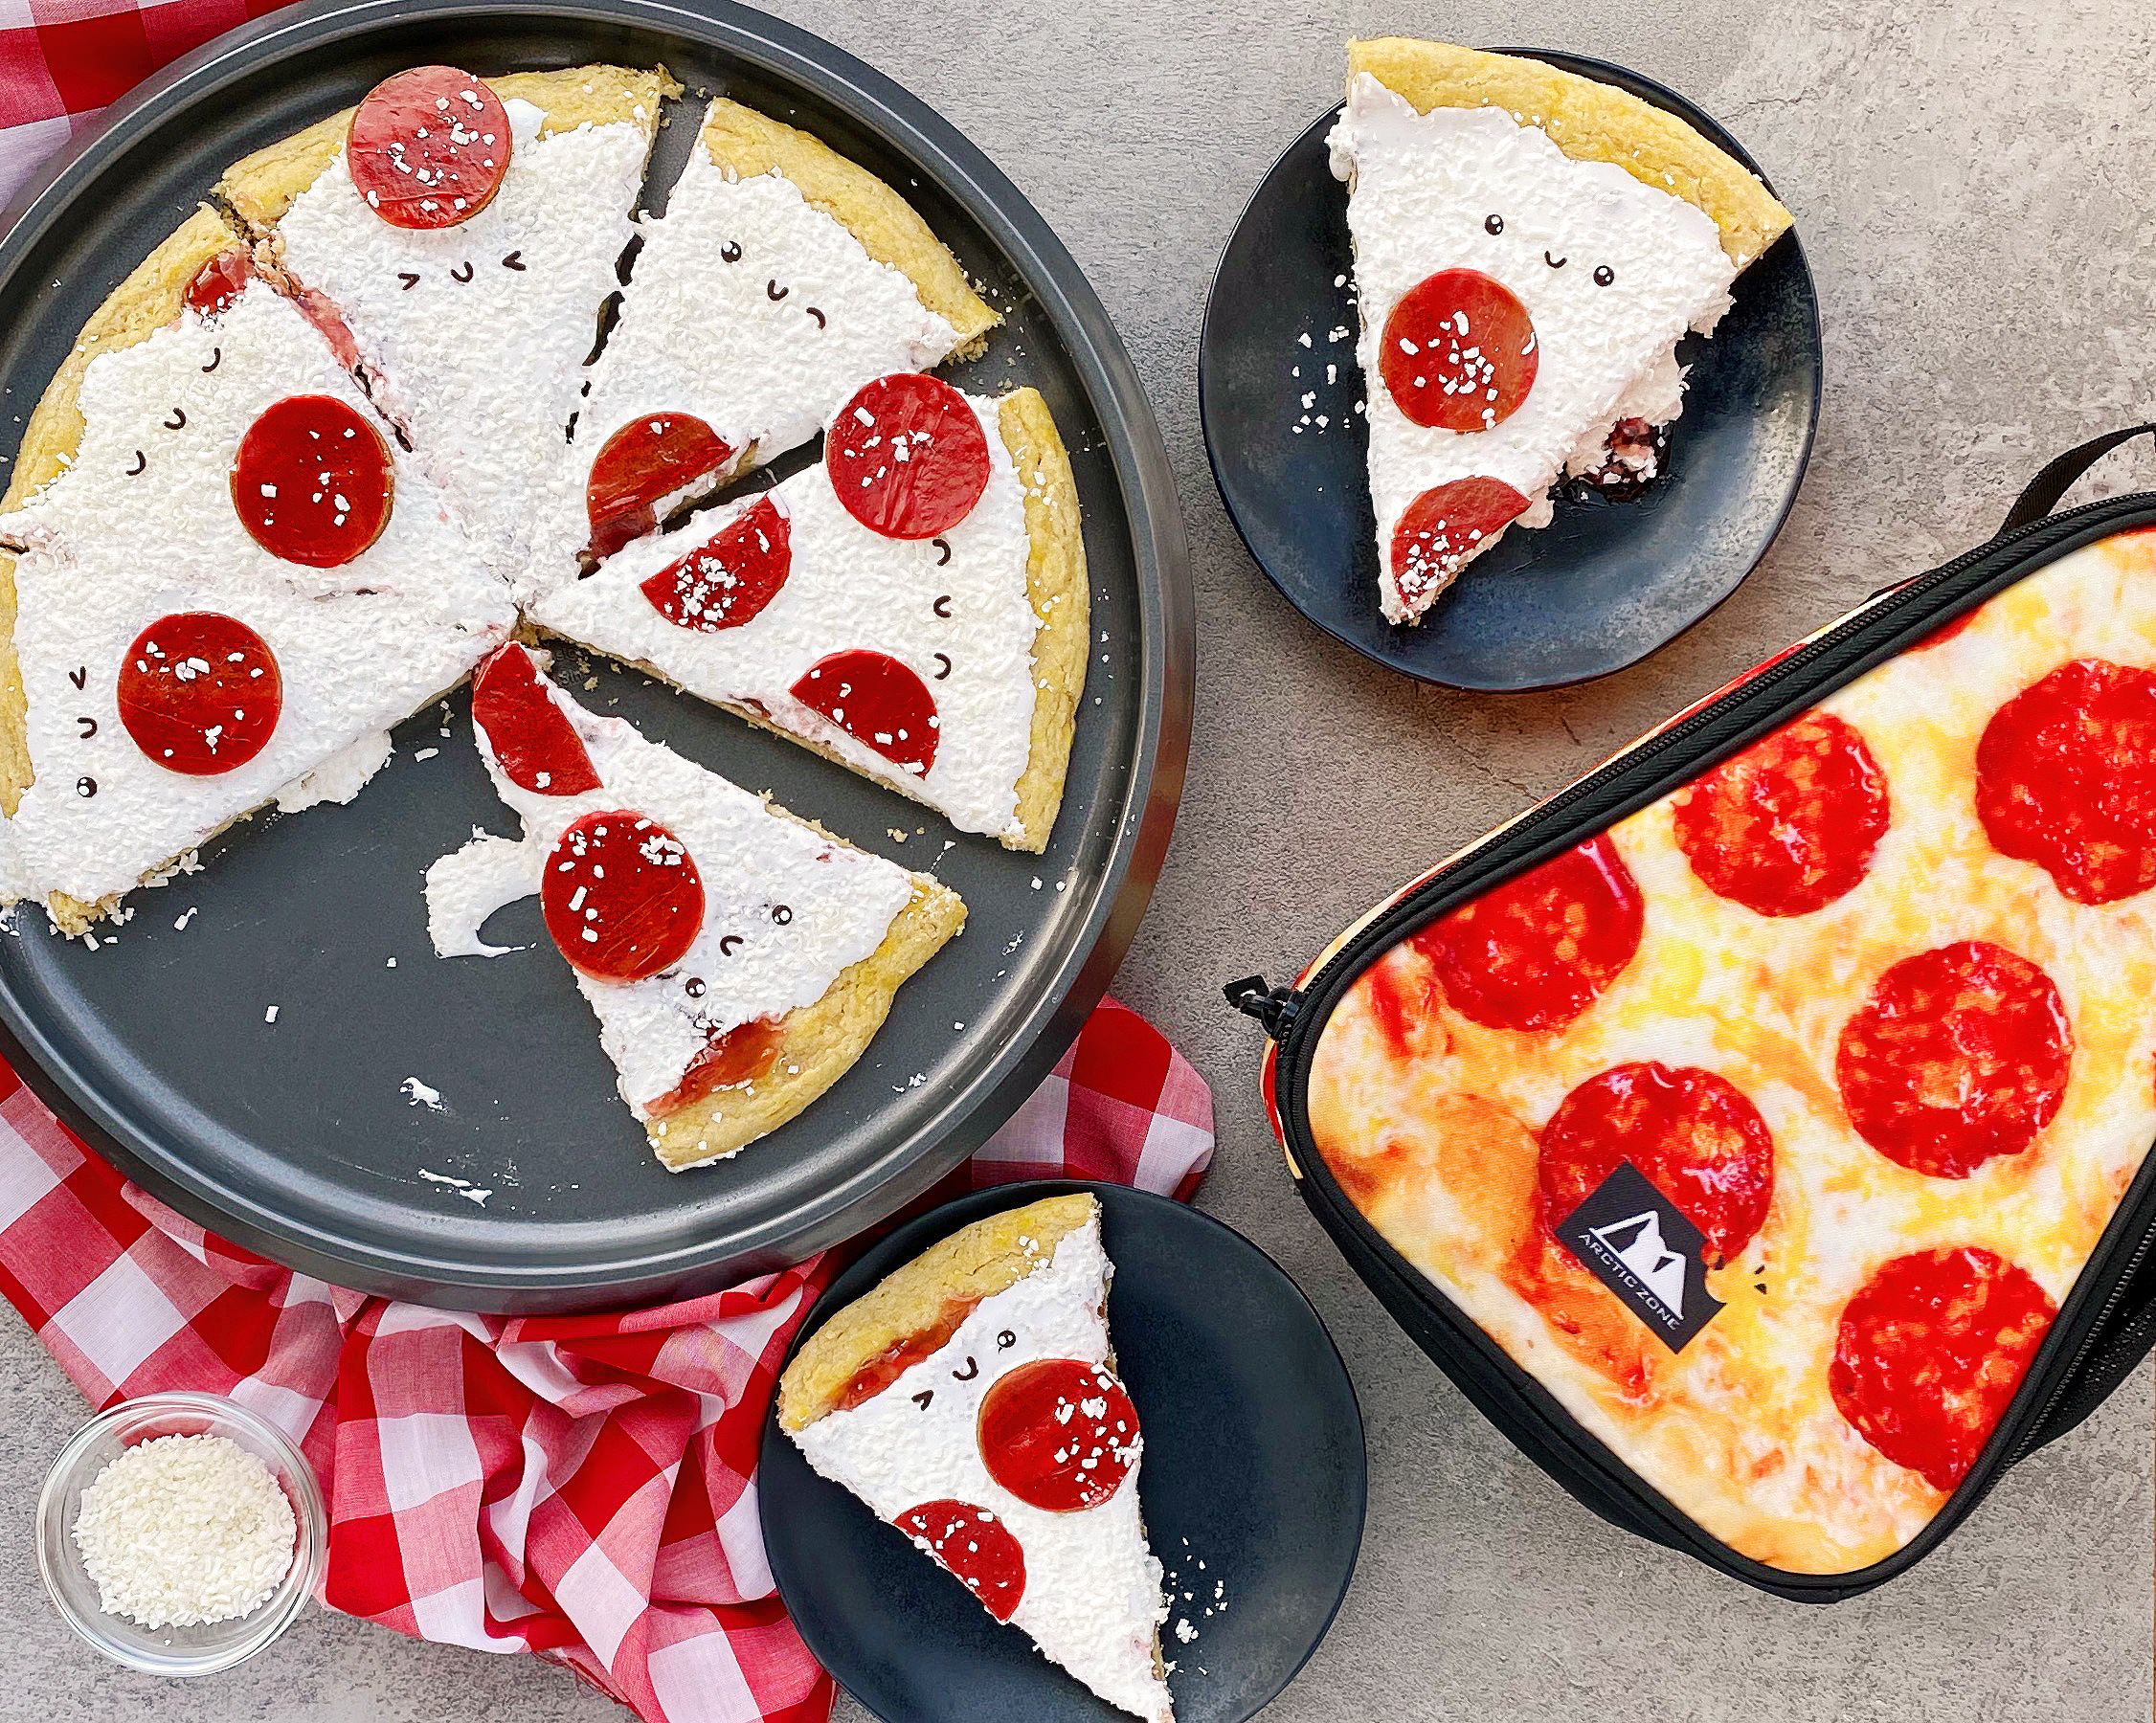 Pepperoni Pizza Cake Recipe 